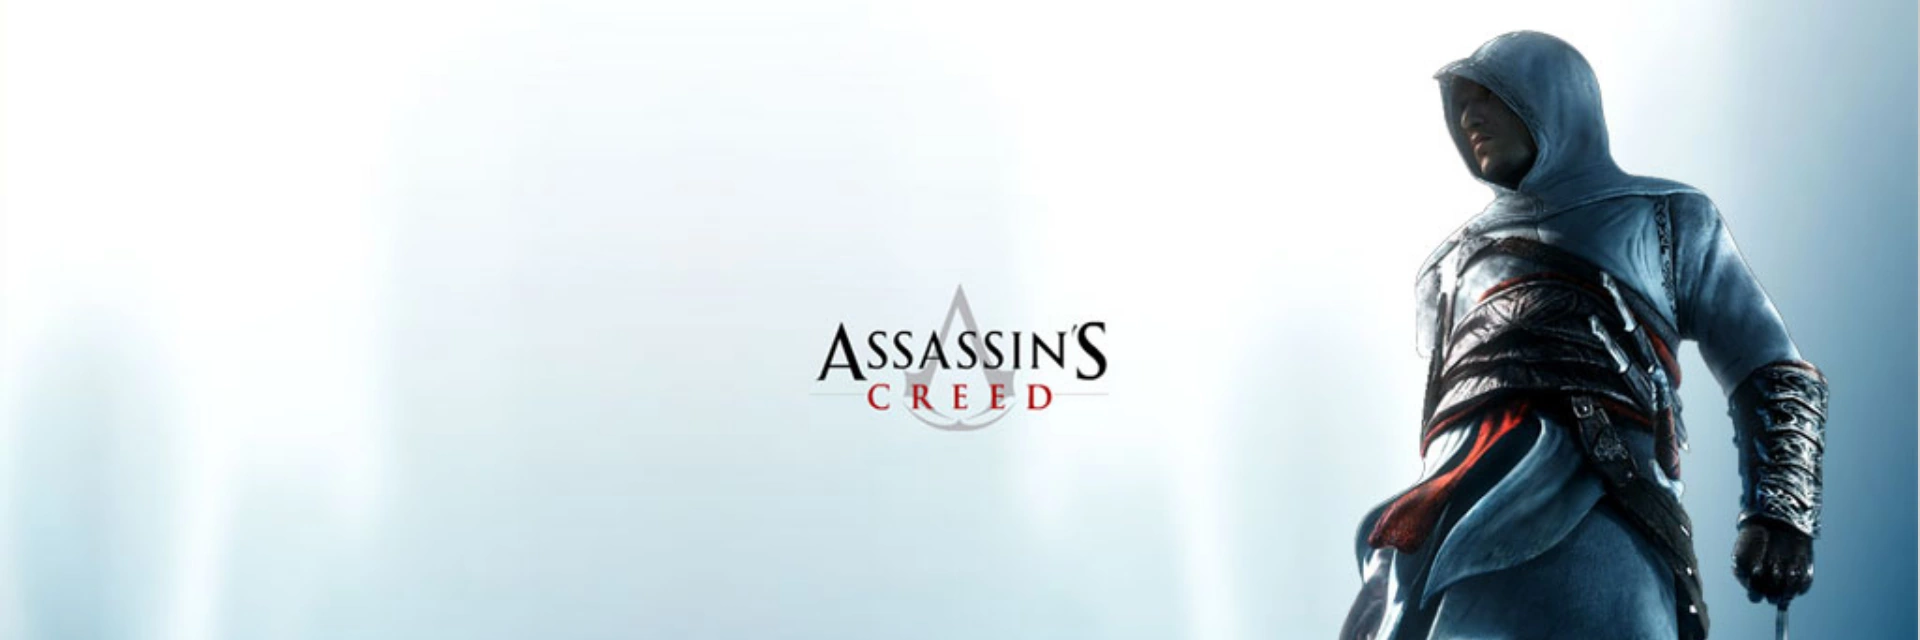 Assassins.Creed2 .banner3